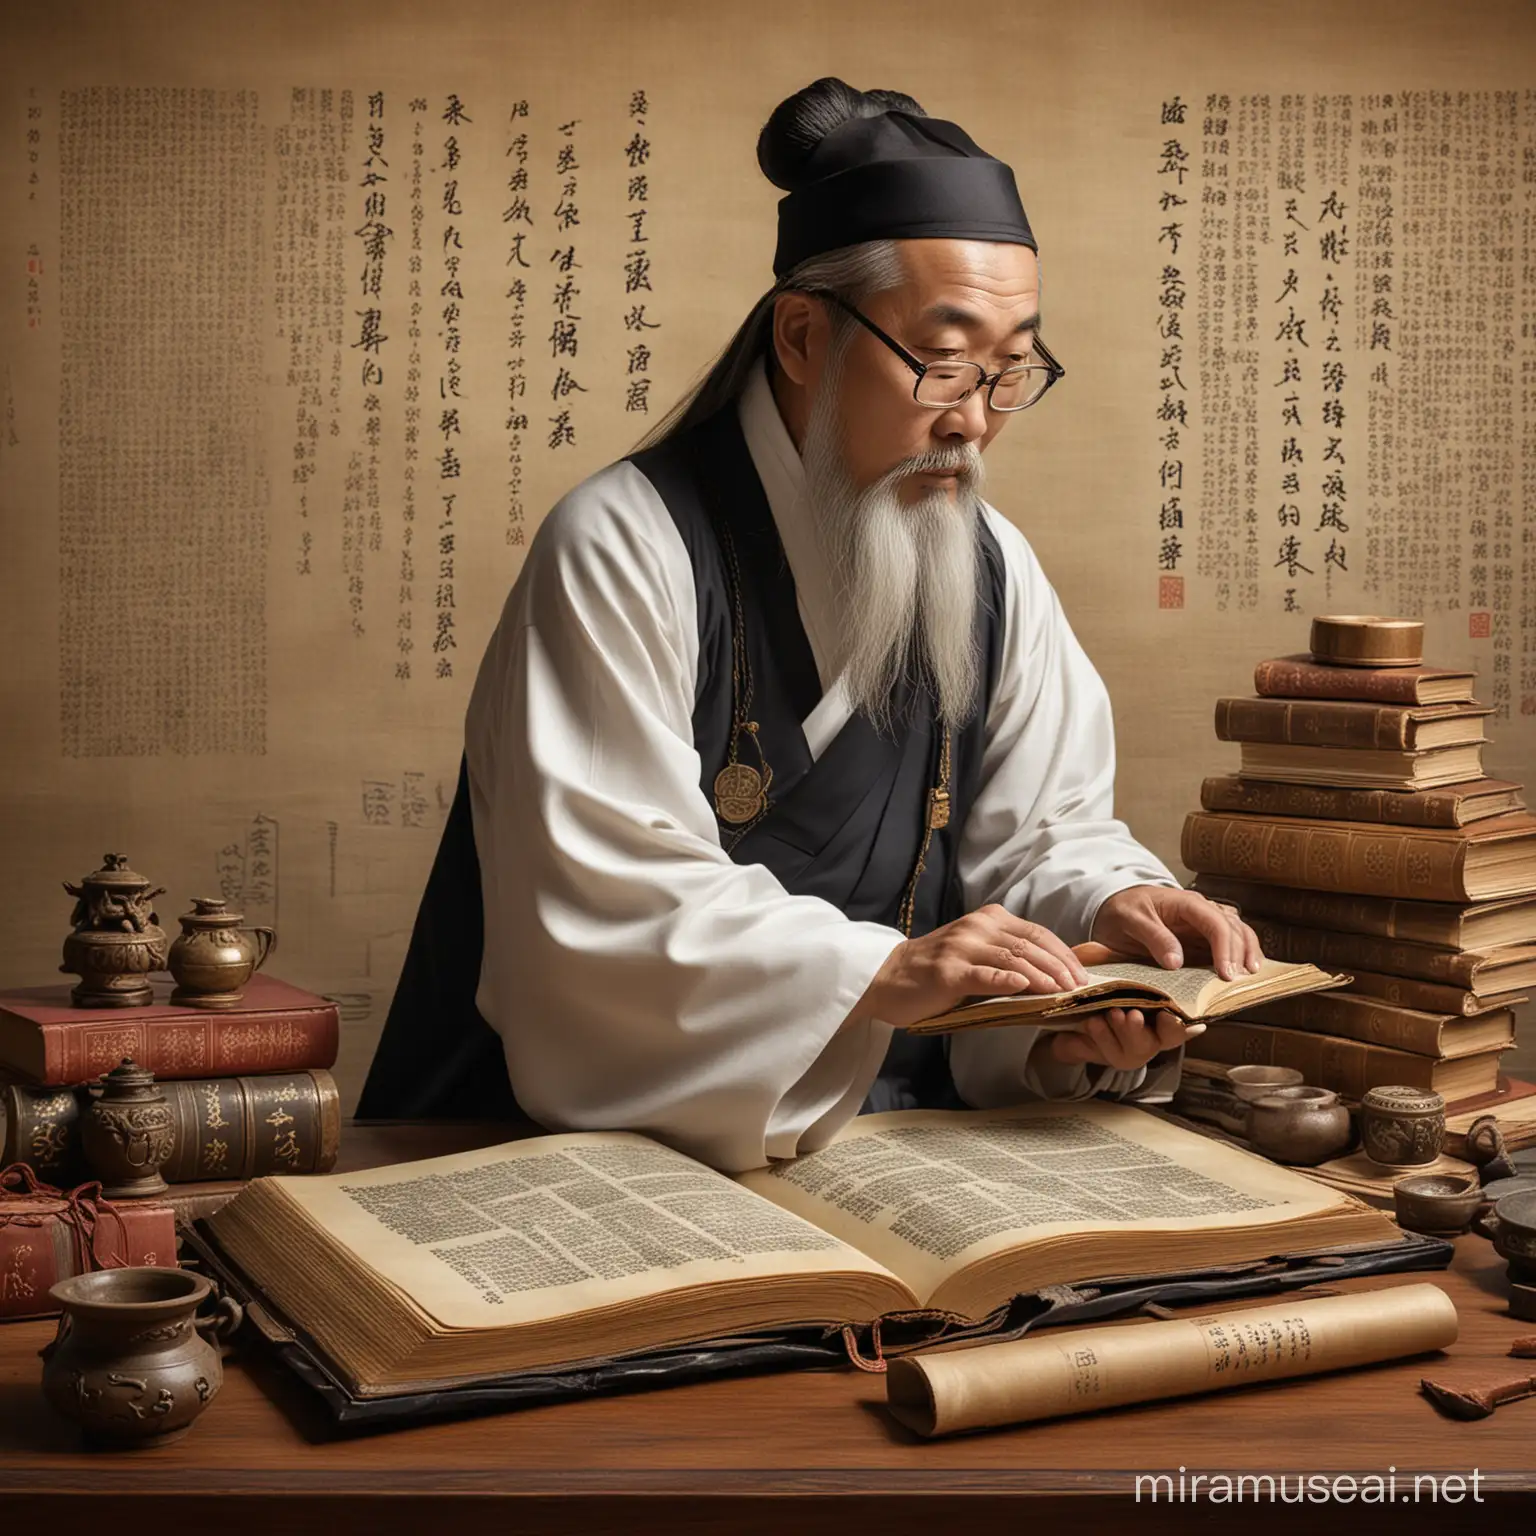 Una representación de un erudito confuciano inmerso en el estudio de los clásicos confucianos, con libros antiguos y pergaminos a su alrededor, ilustrando la búsqueda constante de conocimiento y sabiduría en el Confucianismo.